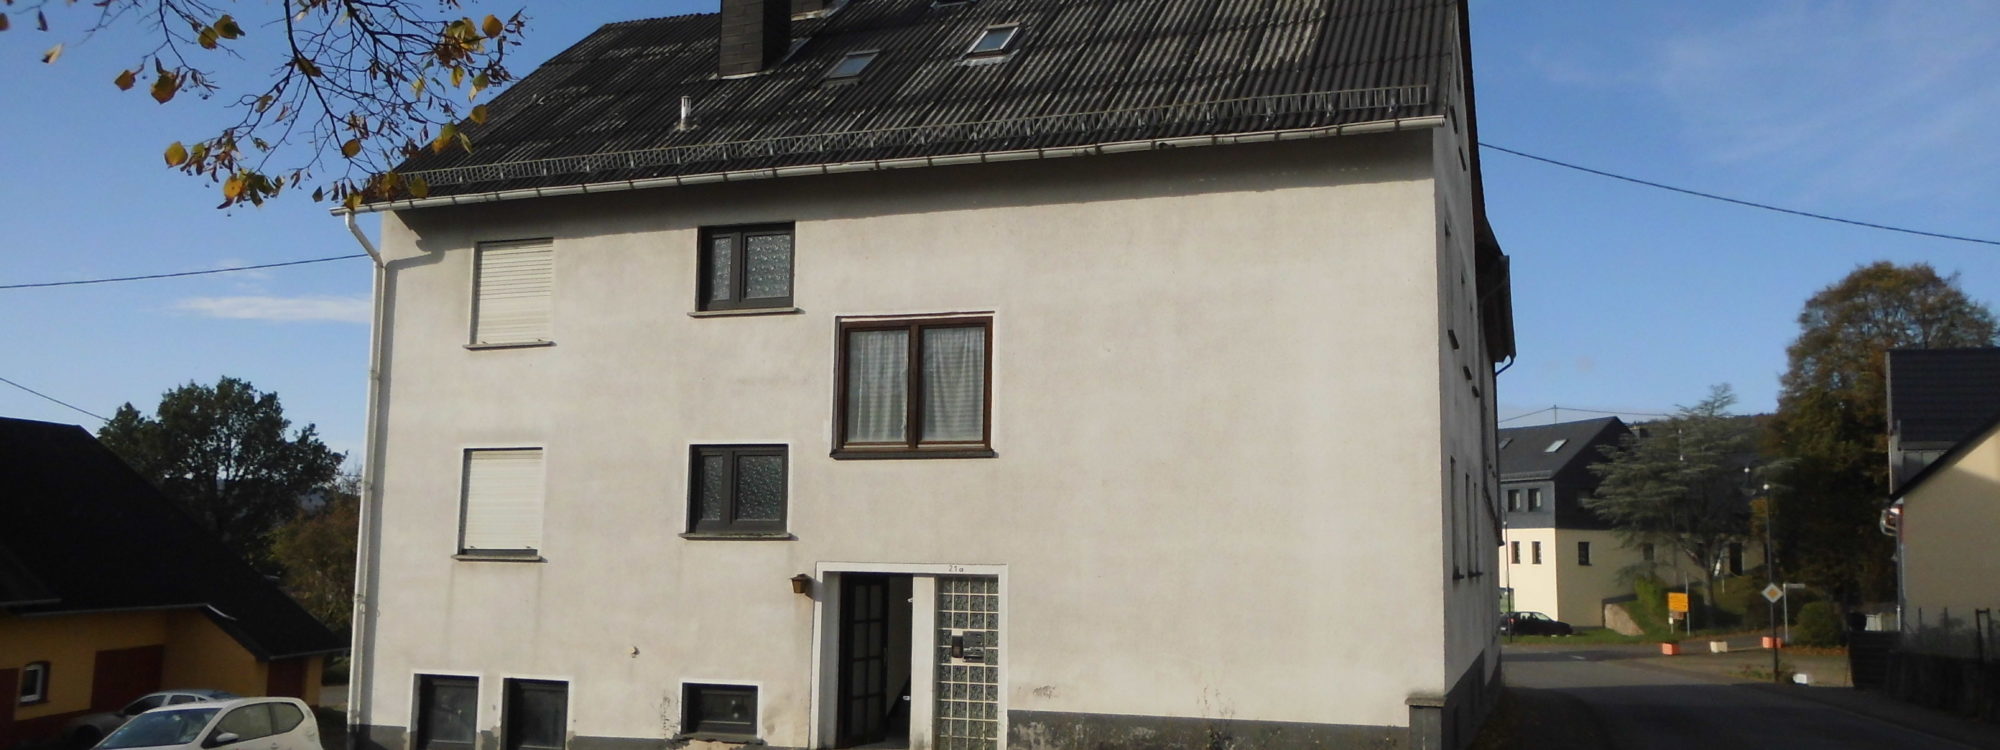 Mehrfamilienhaus, 7 WE, in Sensweiler, ca. 9 % Rendite